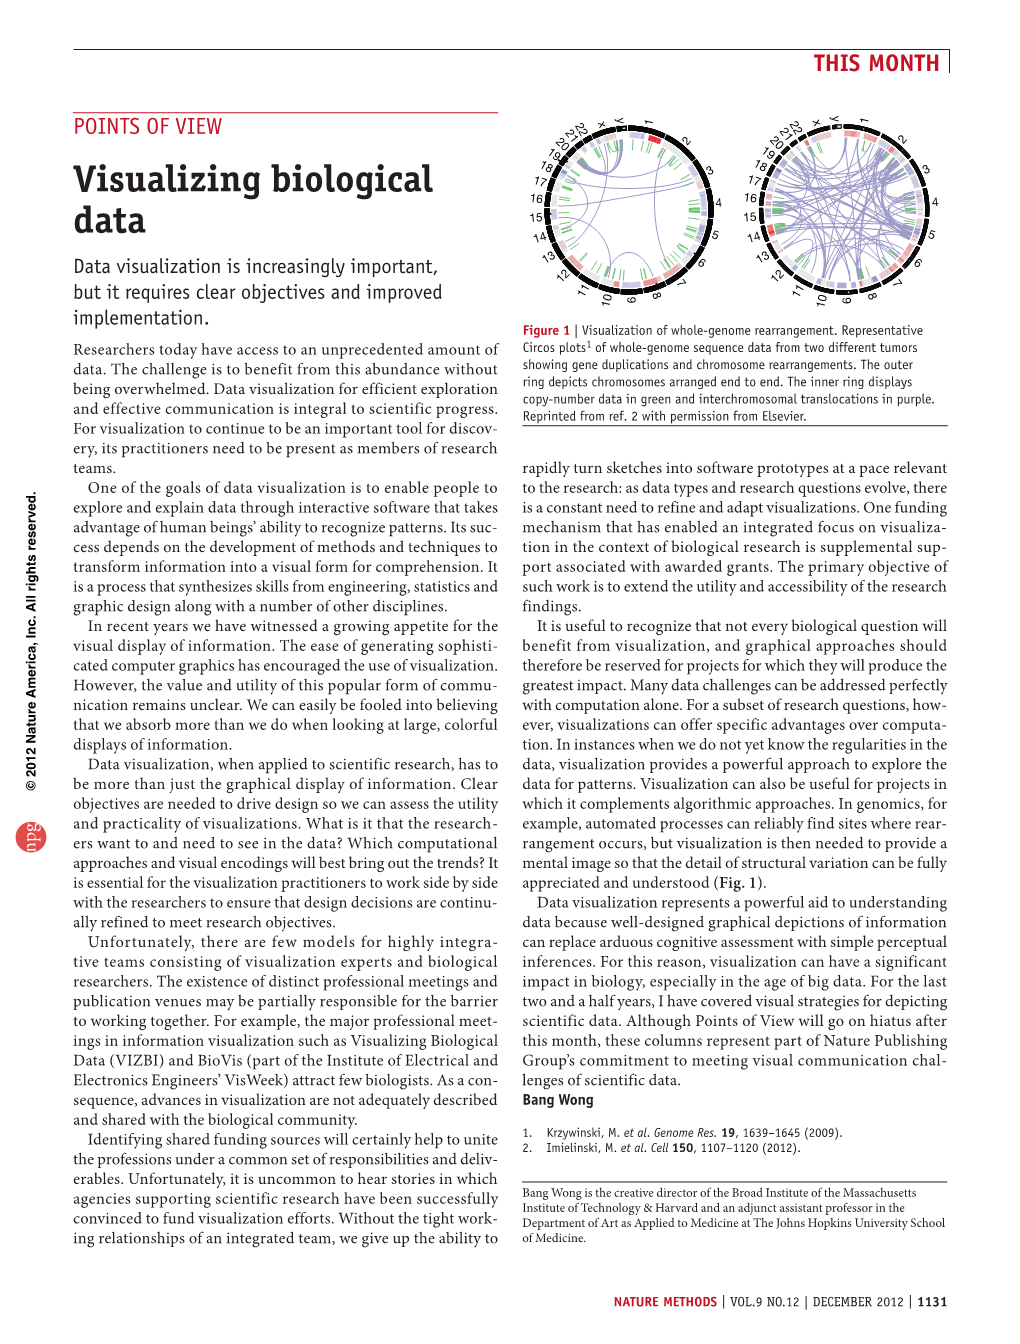 Visualizing Biological Data